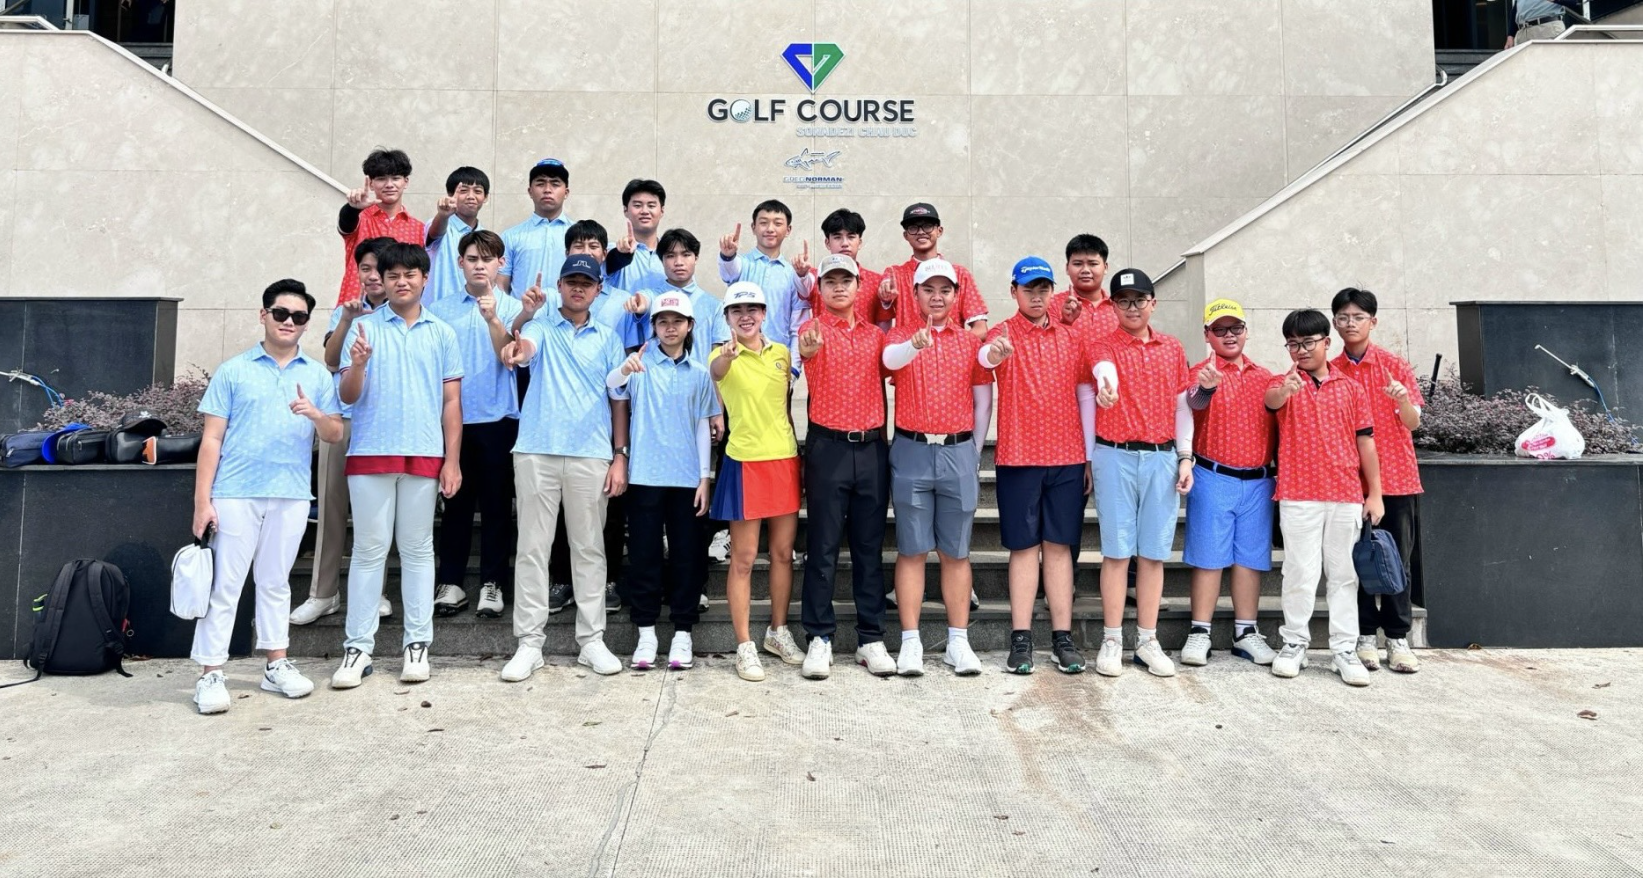 Trường Quốc tế Canada và Hội golf trẻ  Bà Rịa Vũng Tàu tổ chức giải đấu giao hữu